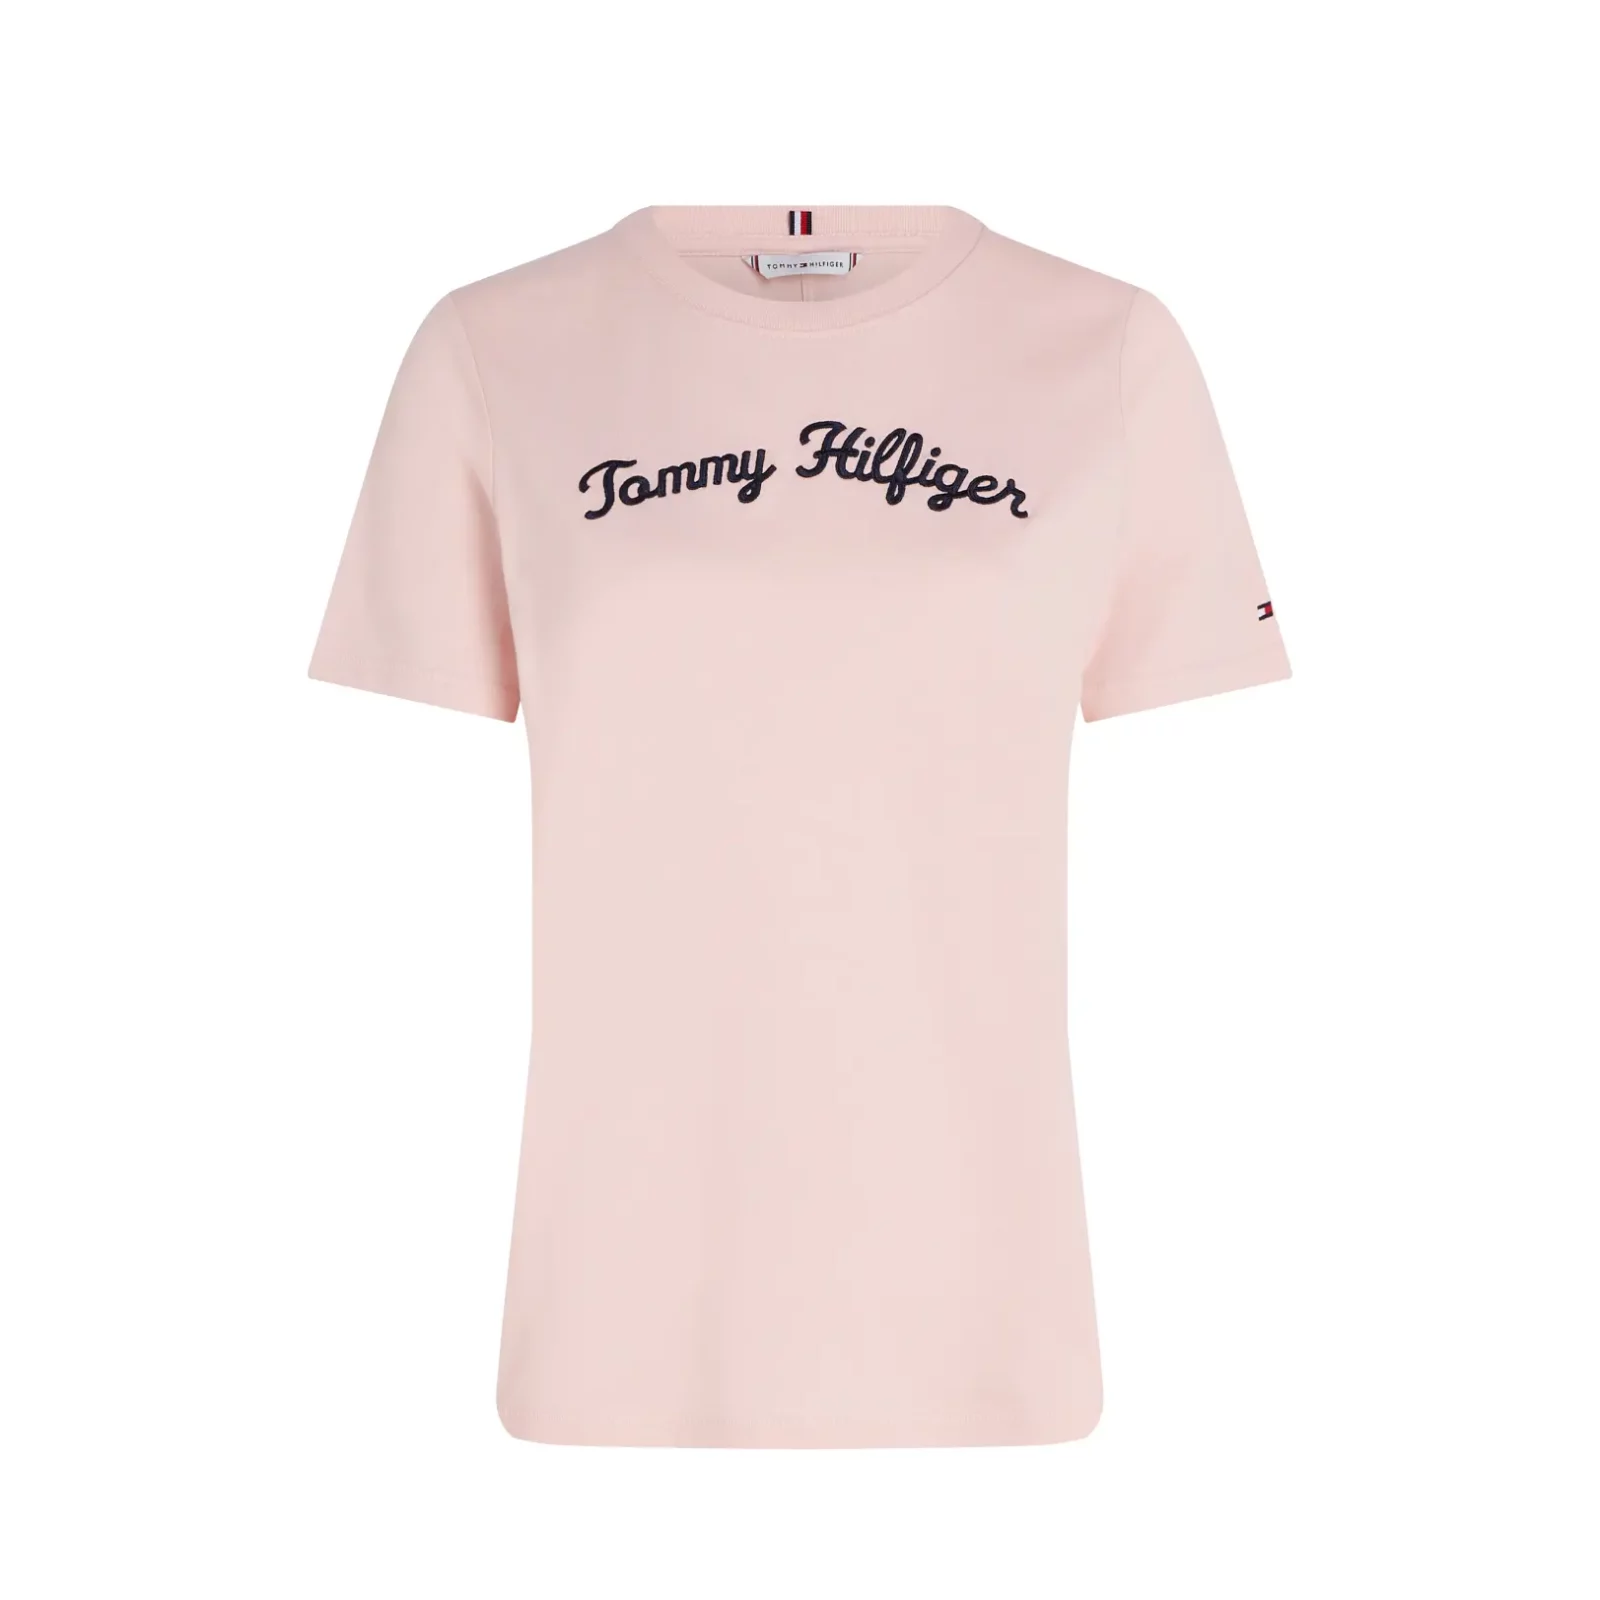 Vaaleanpunainen naisten t-paita